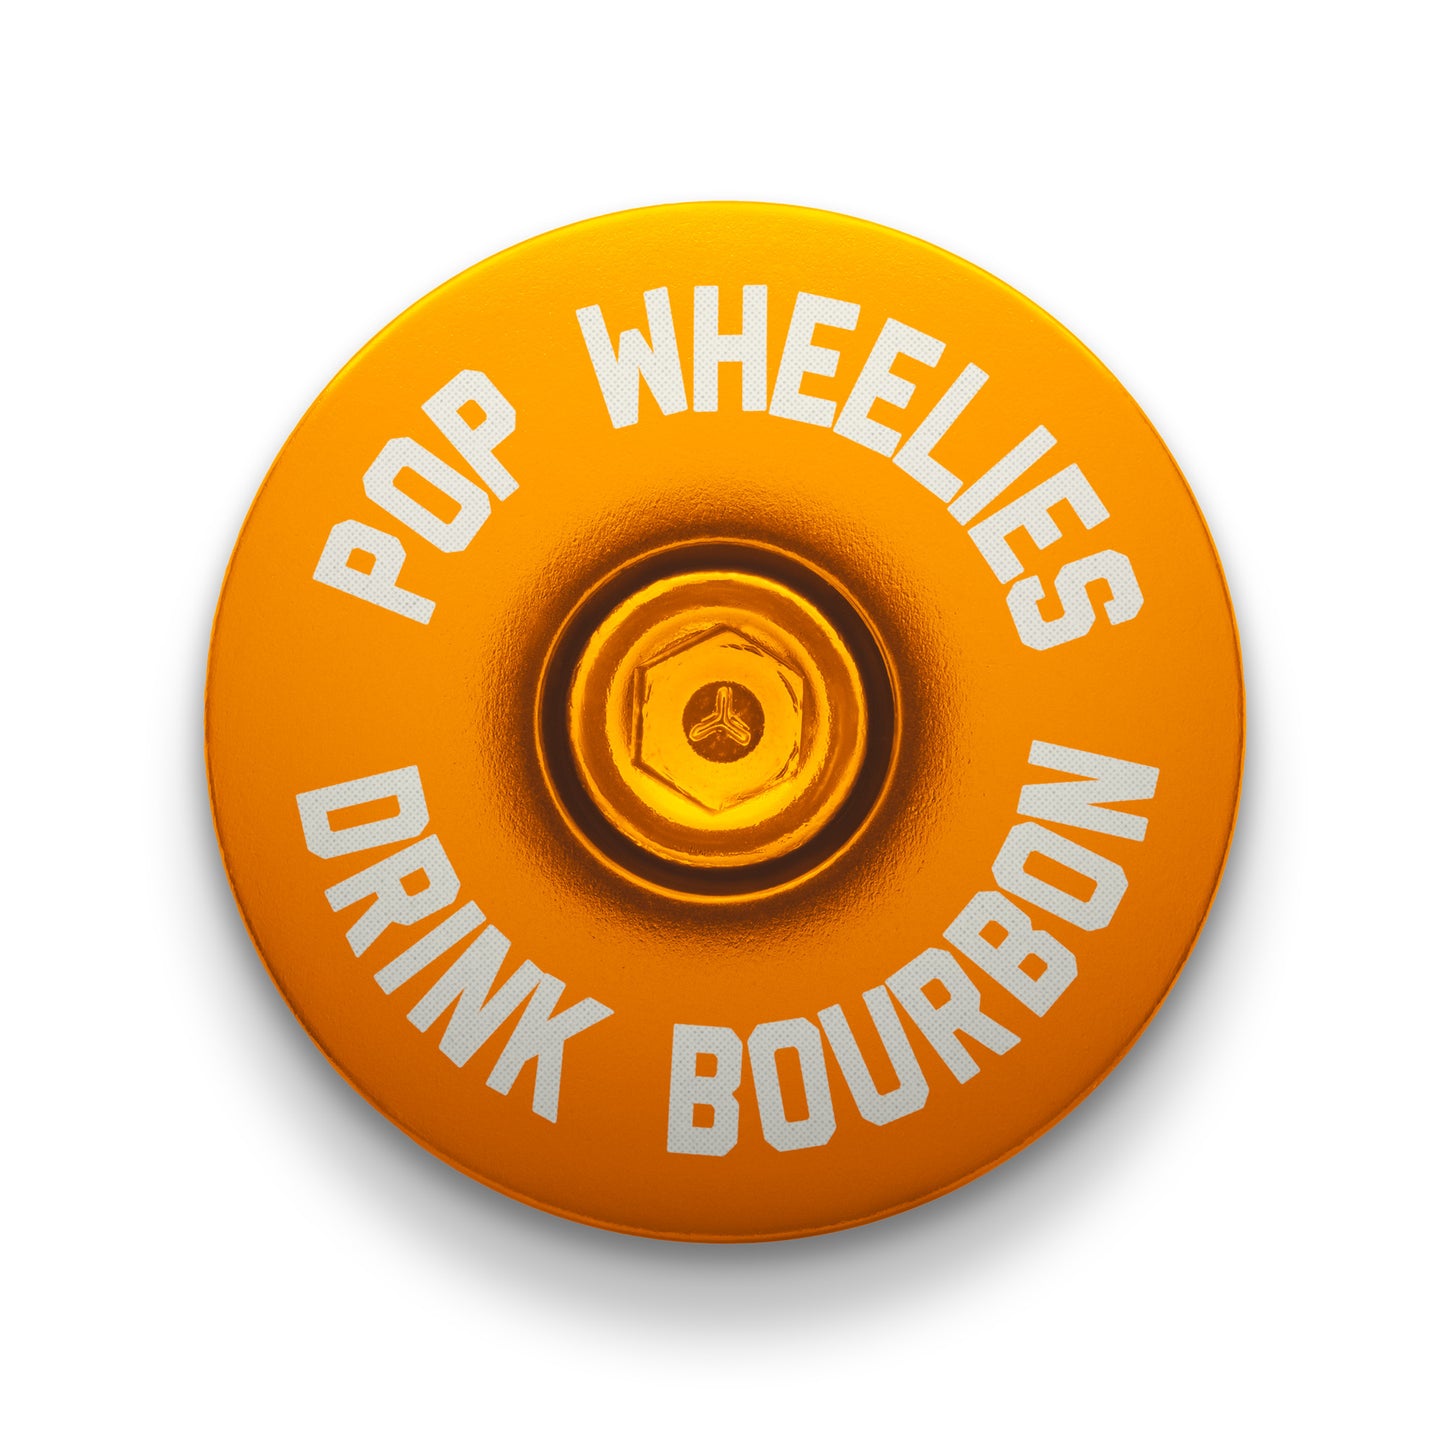 Pop Wheelies Drink Bourbon Bicycle Headset Cap